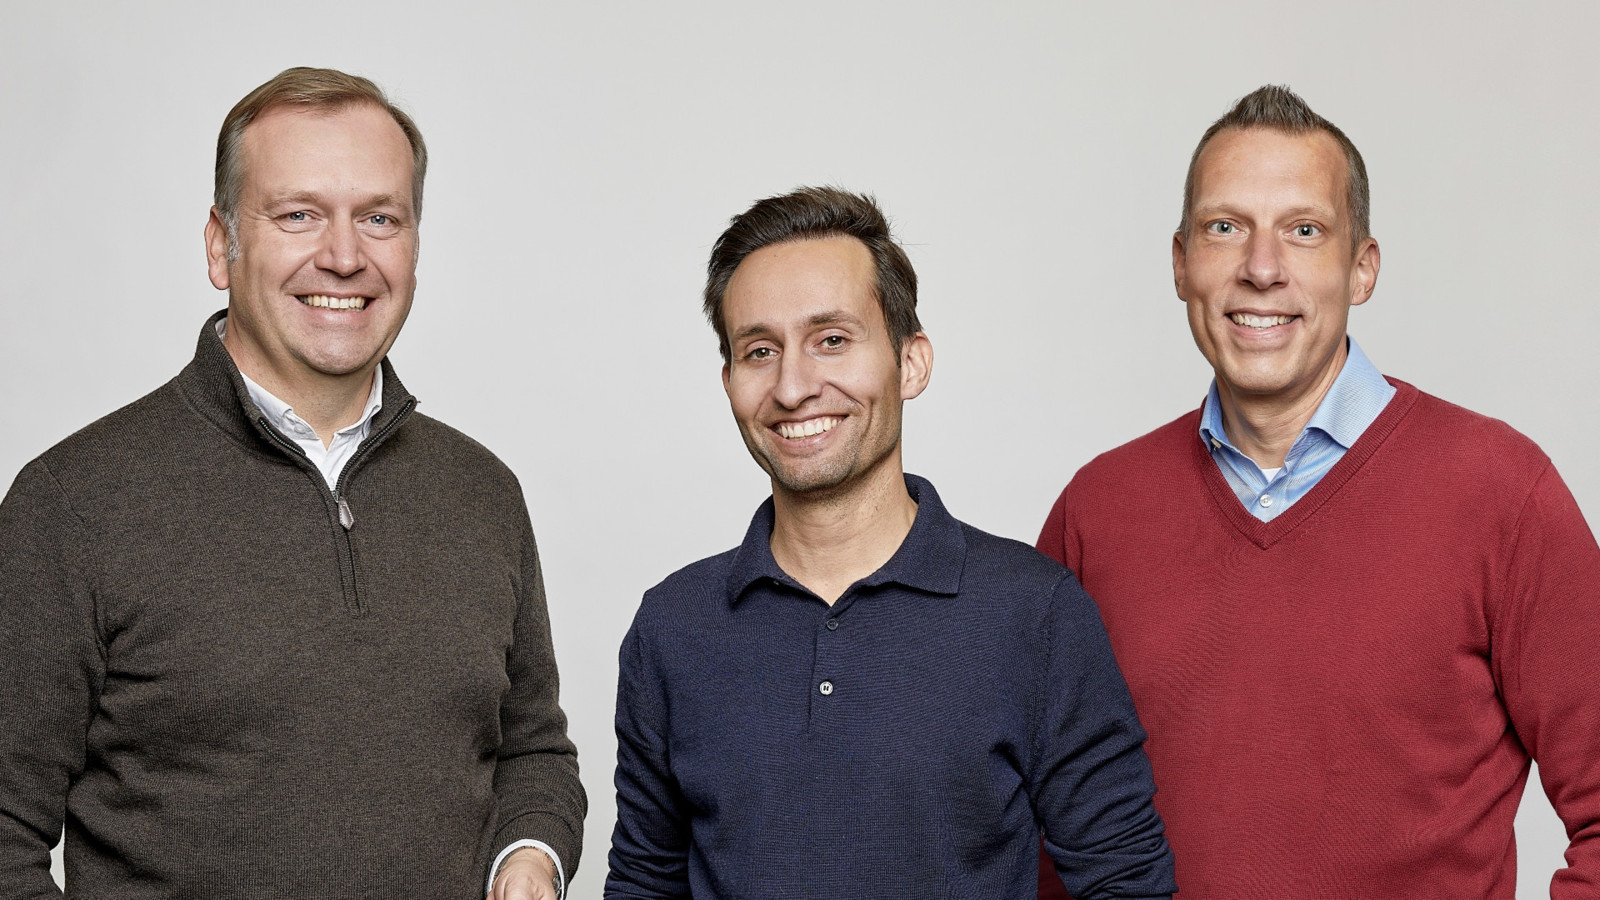 Bernd Humke, Markus Winter und Matthias Gossenz (v.l.n.r.) haben das Berliner E-Commerce-Unternehmen Kfzteile24 via Management-Buy-out übernommen. 